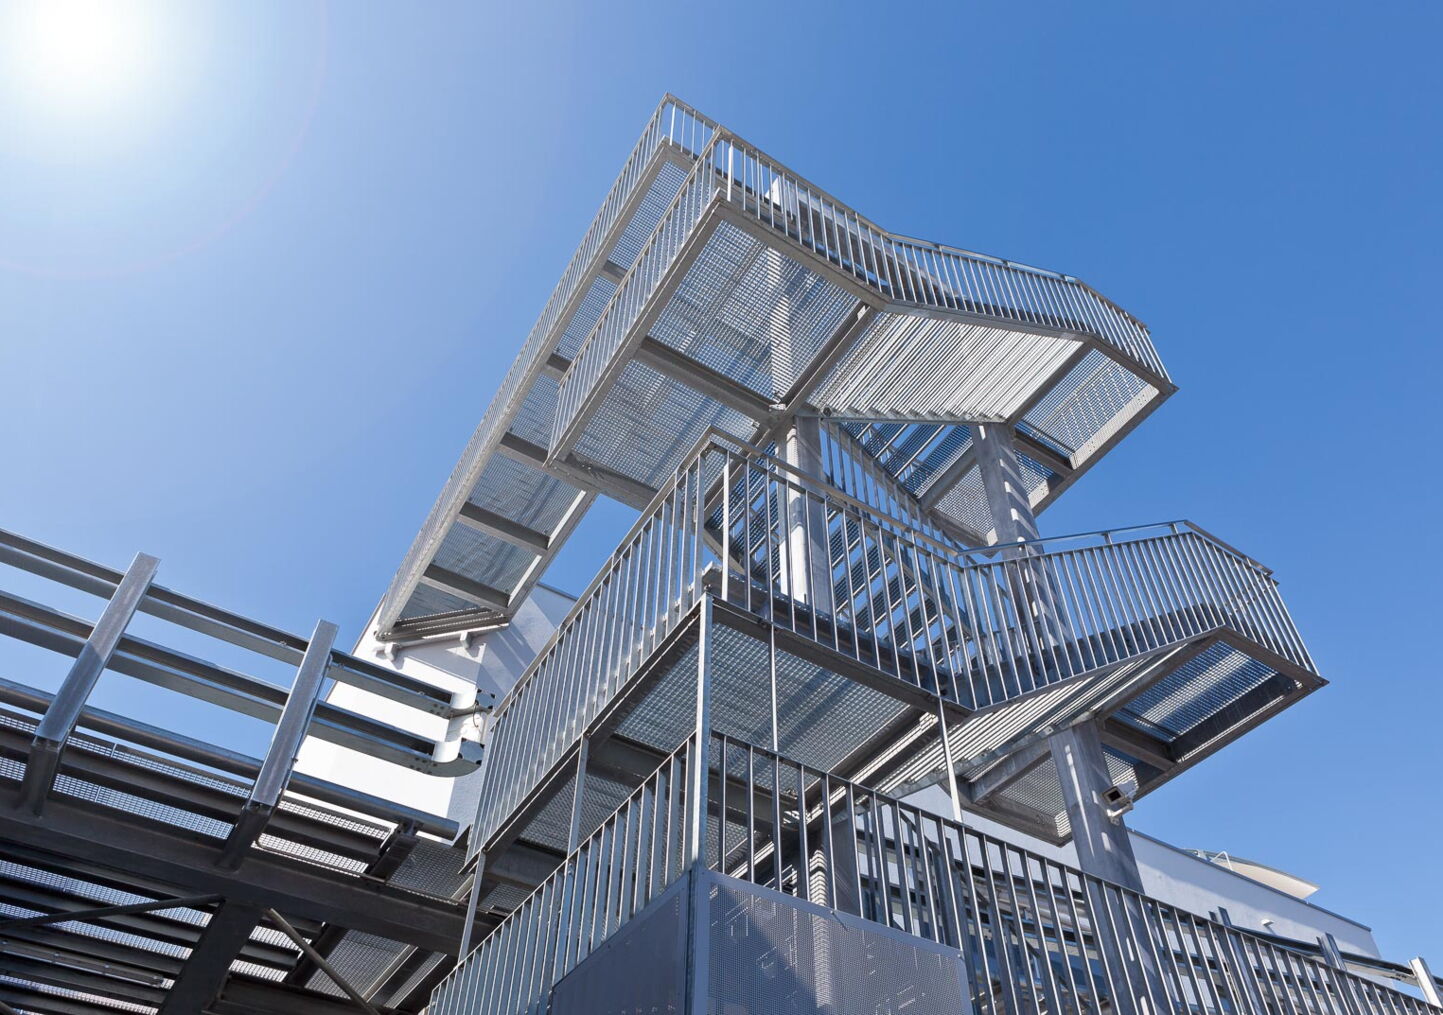 Industriefotografie: Stahltreppe mit Geländer vor blauem Himmel